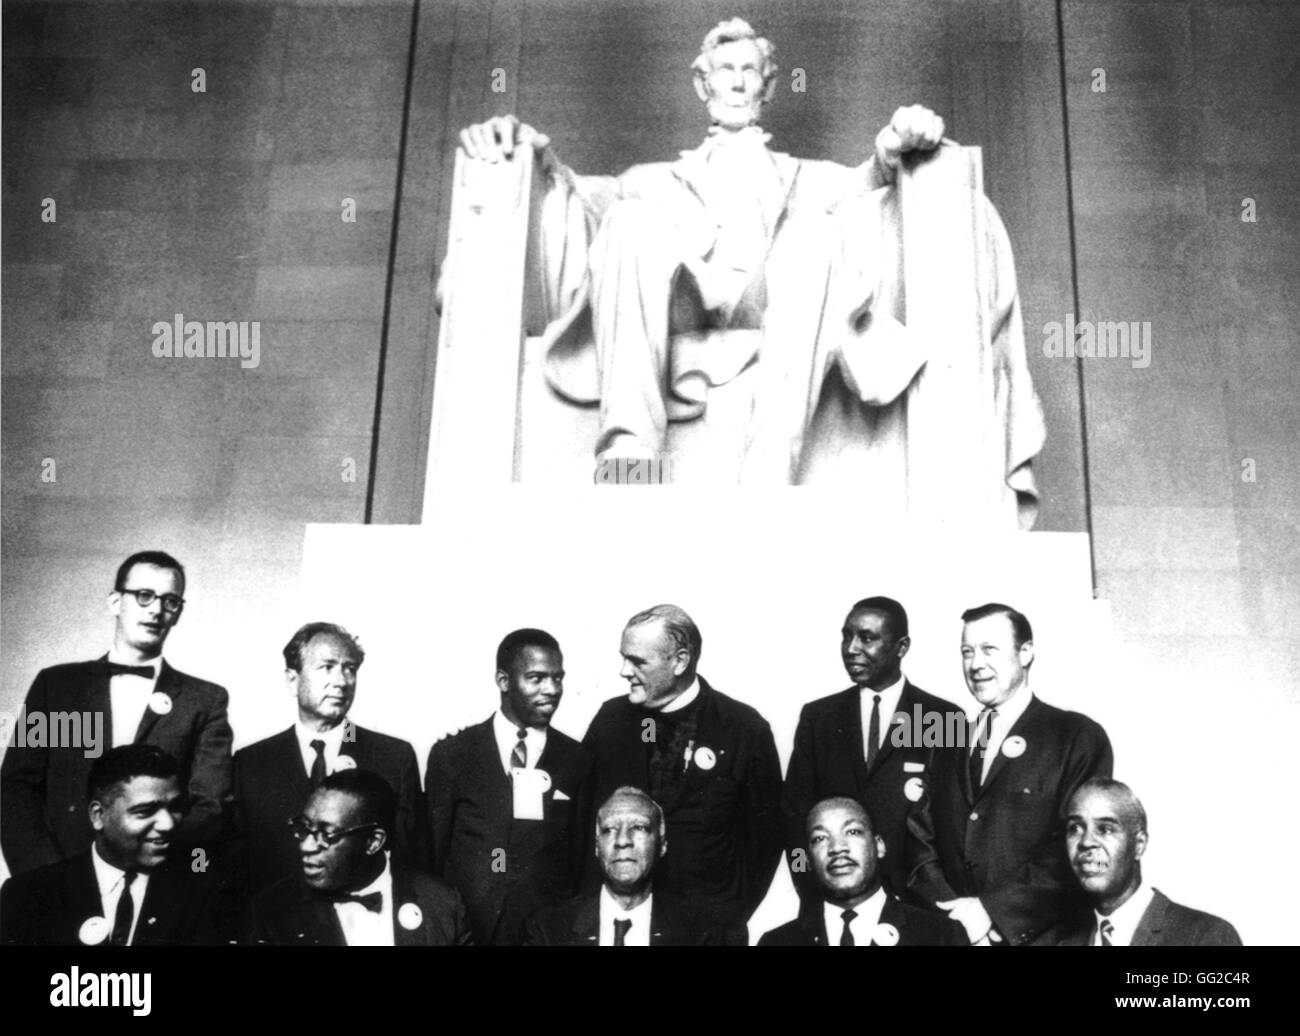 Après la manifestation pour les droits civils, à Washington, les dirigeants du mouvement (parmi lesquels Martin Luther King) se sont rassemblés au pied de la statue de Lincoln Août 1963 United States National archives. Washington Banque D'Images